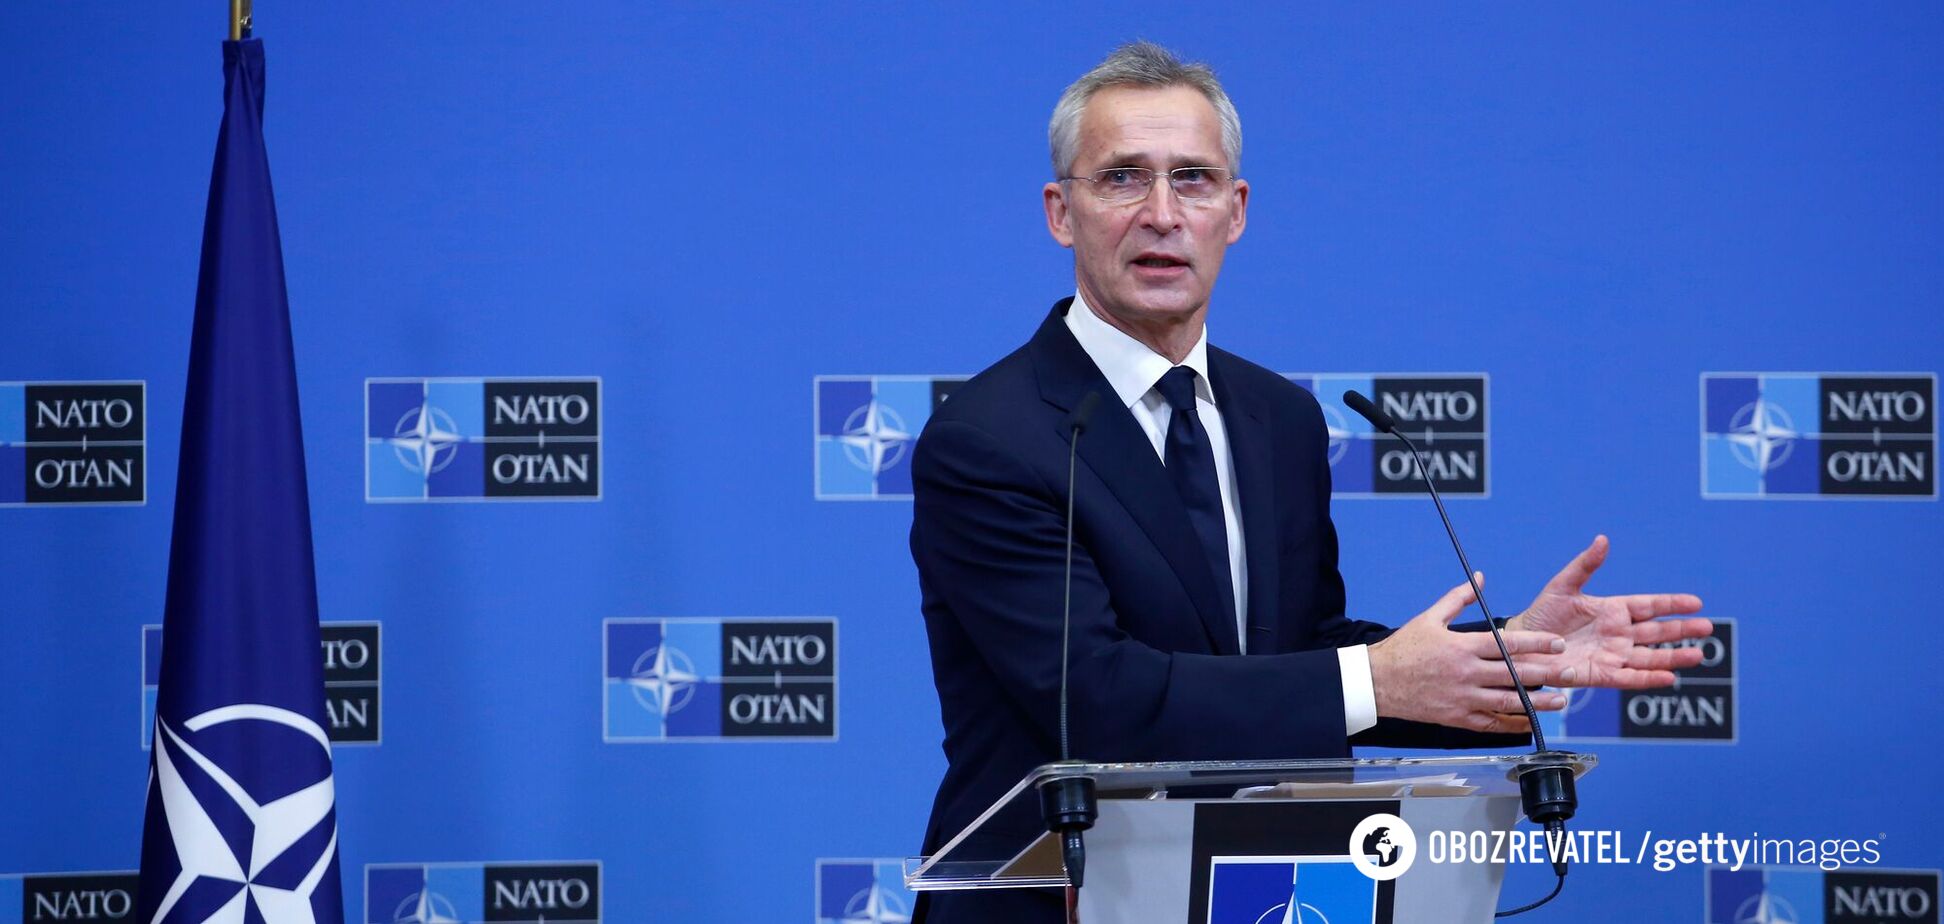 Виведення військ з України та жодних компромісів щодо вступу: у НАТО передали РФ свою відповідь на вимоги 'гарантій безпеки'